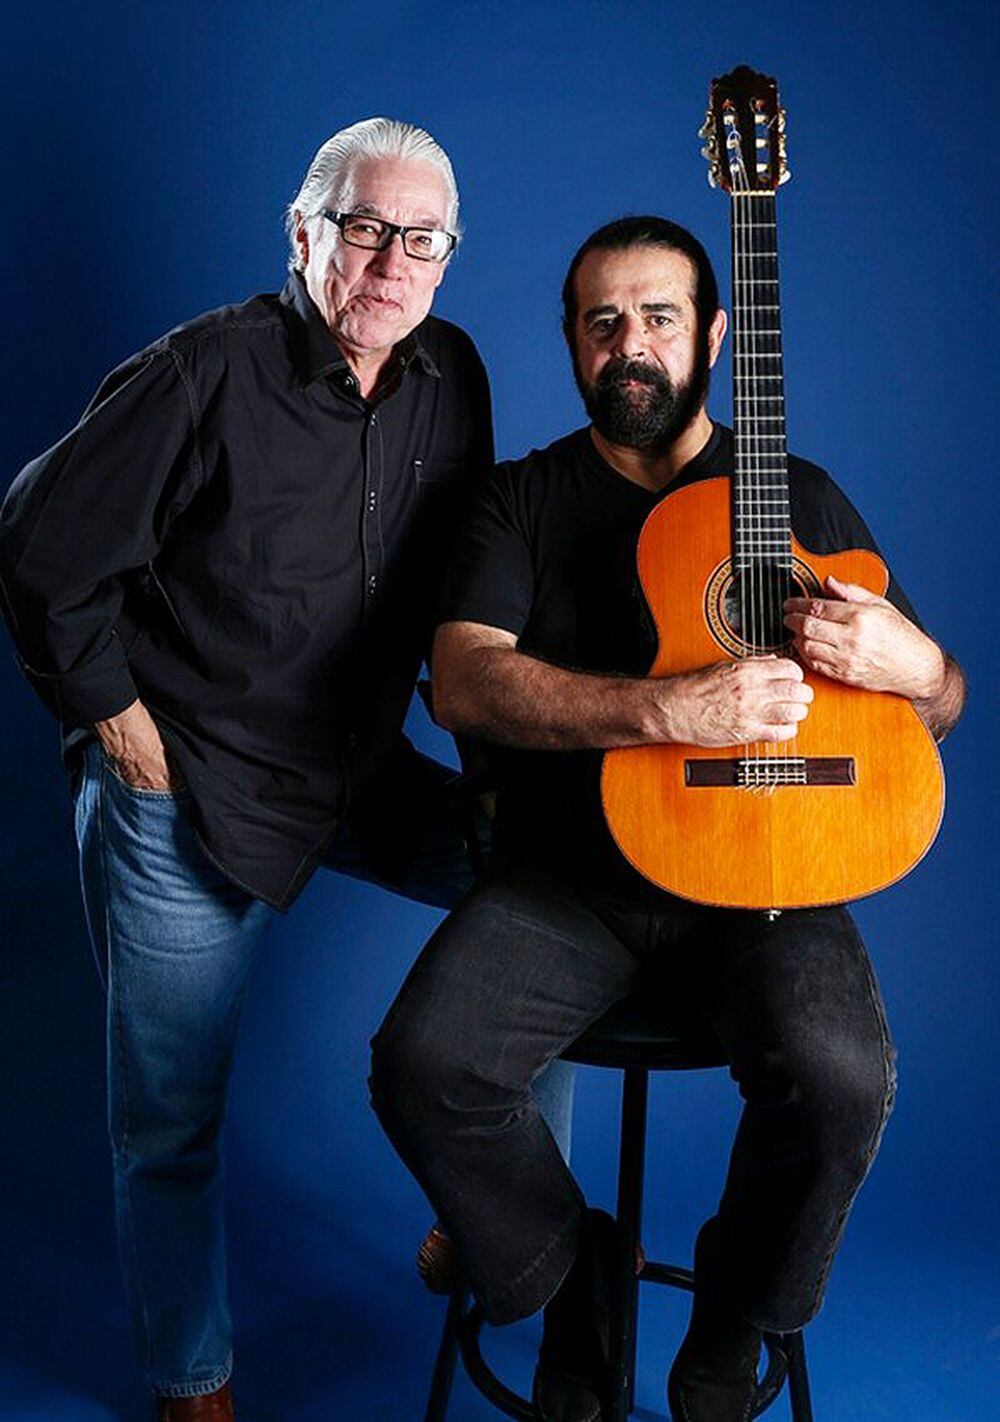 Luis Enrique Mejía Godoy y Adrián Goizueta mantienen una estrecha relación de amistad y música desde hace muchos años en Costa Rica. Foto: Archivo.